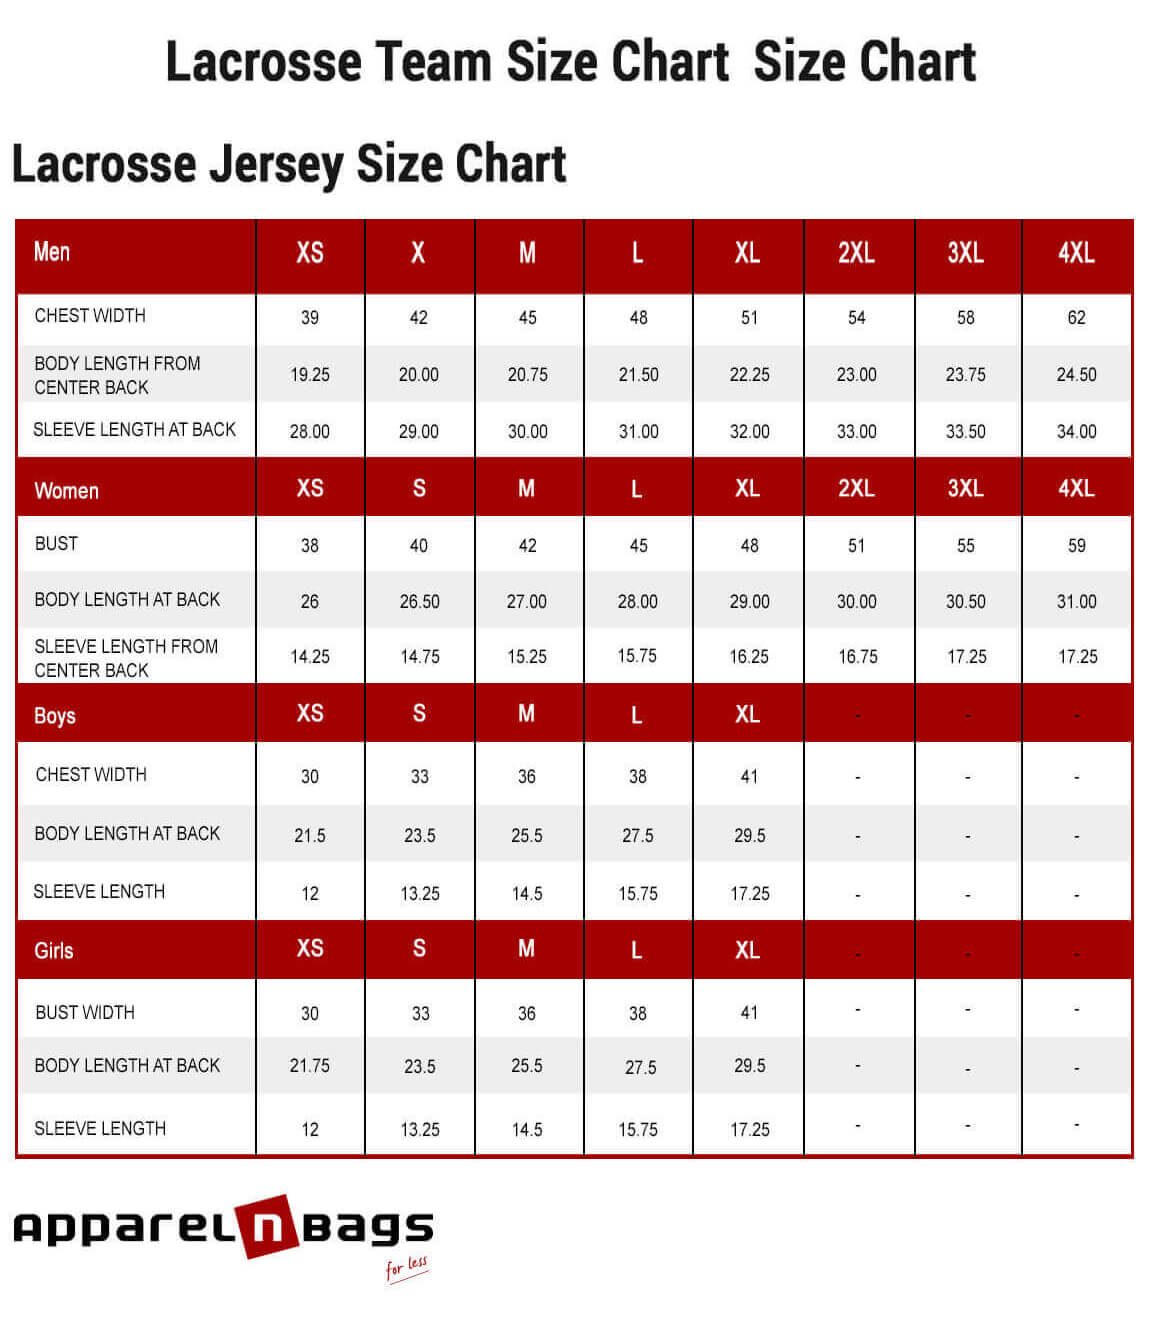 Lacrosse Jersey Size Chart